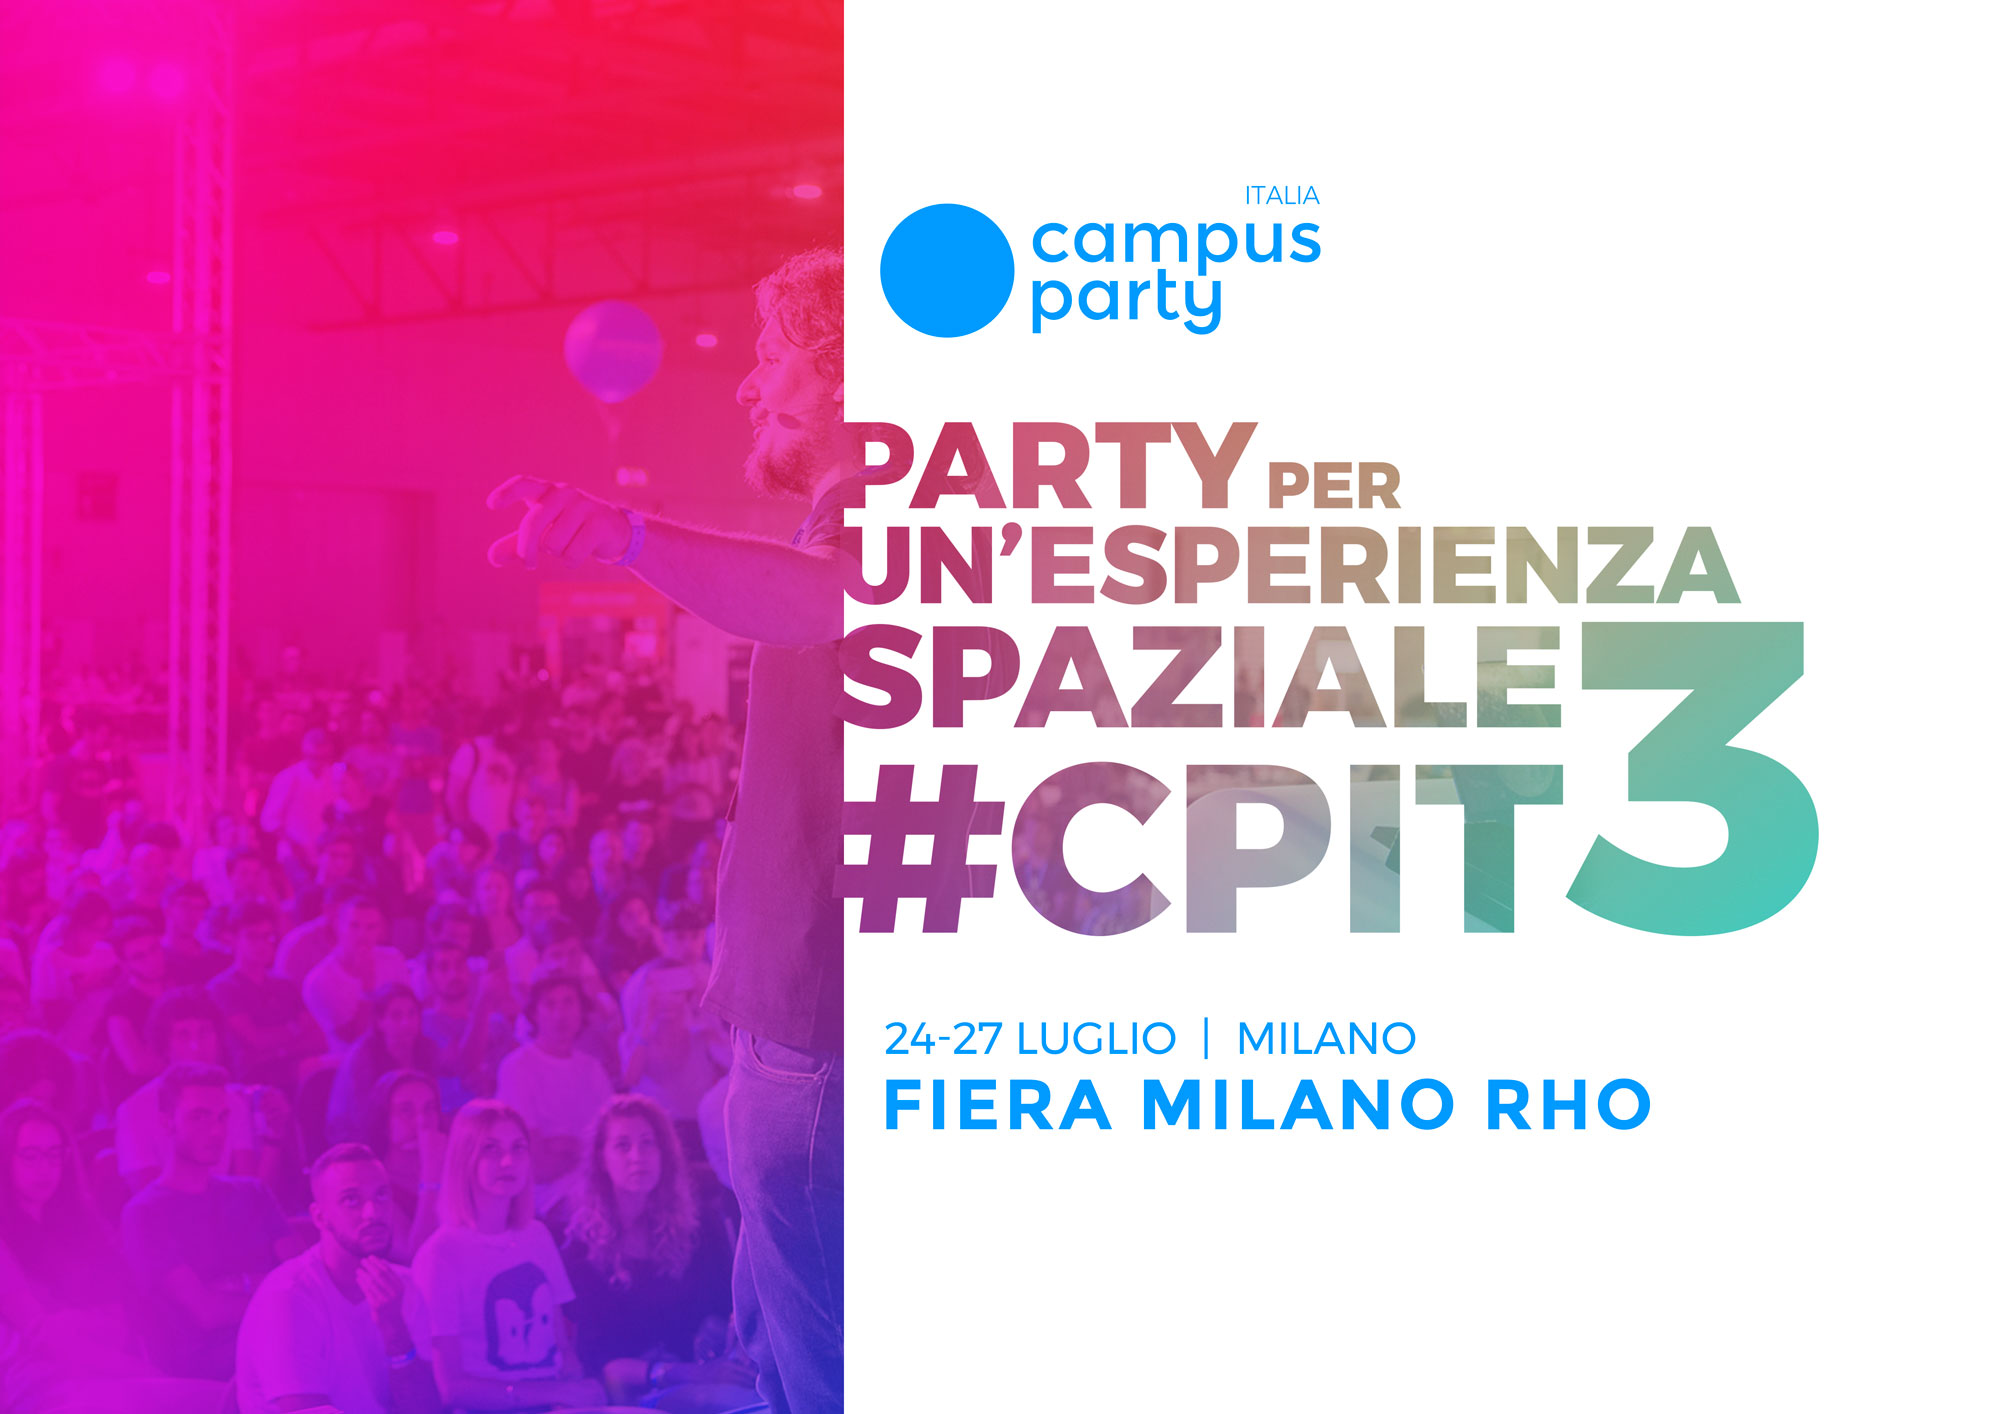 Campus Party: terza edizione dal 24 al 27 luglio 2019, alla Fiera Milano Rho